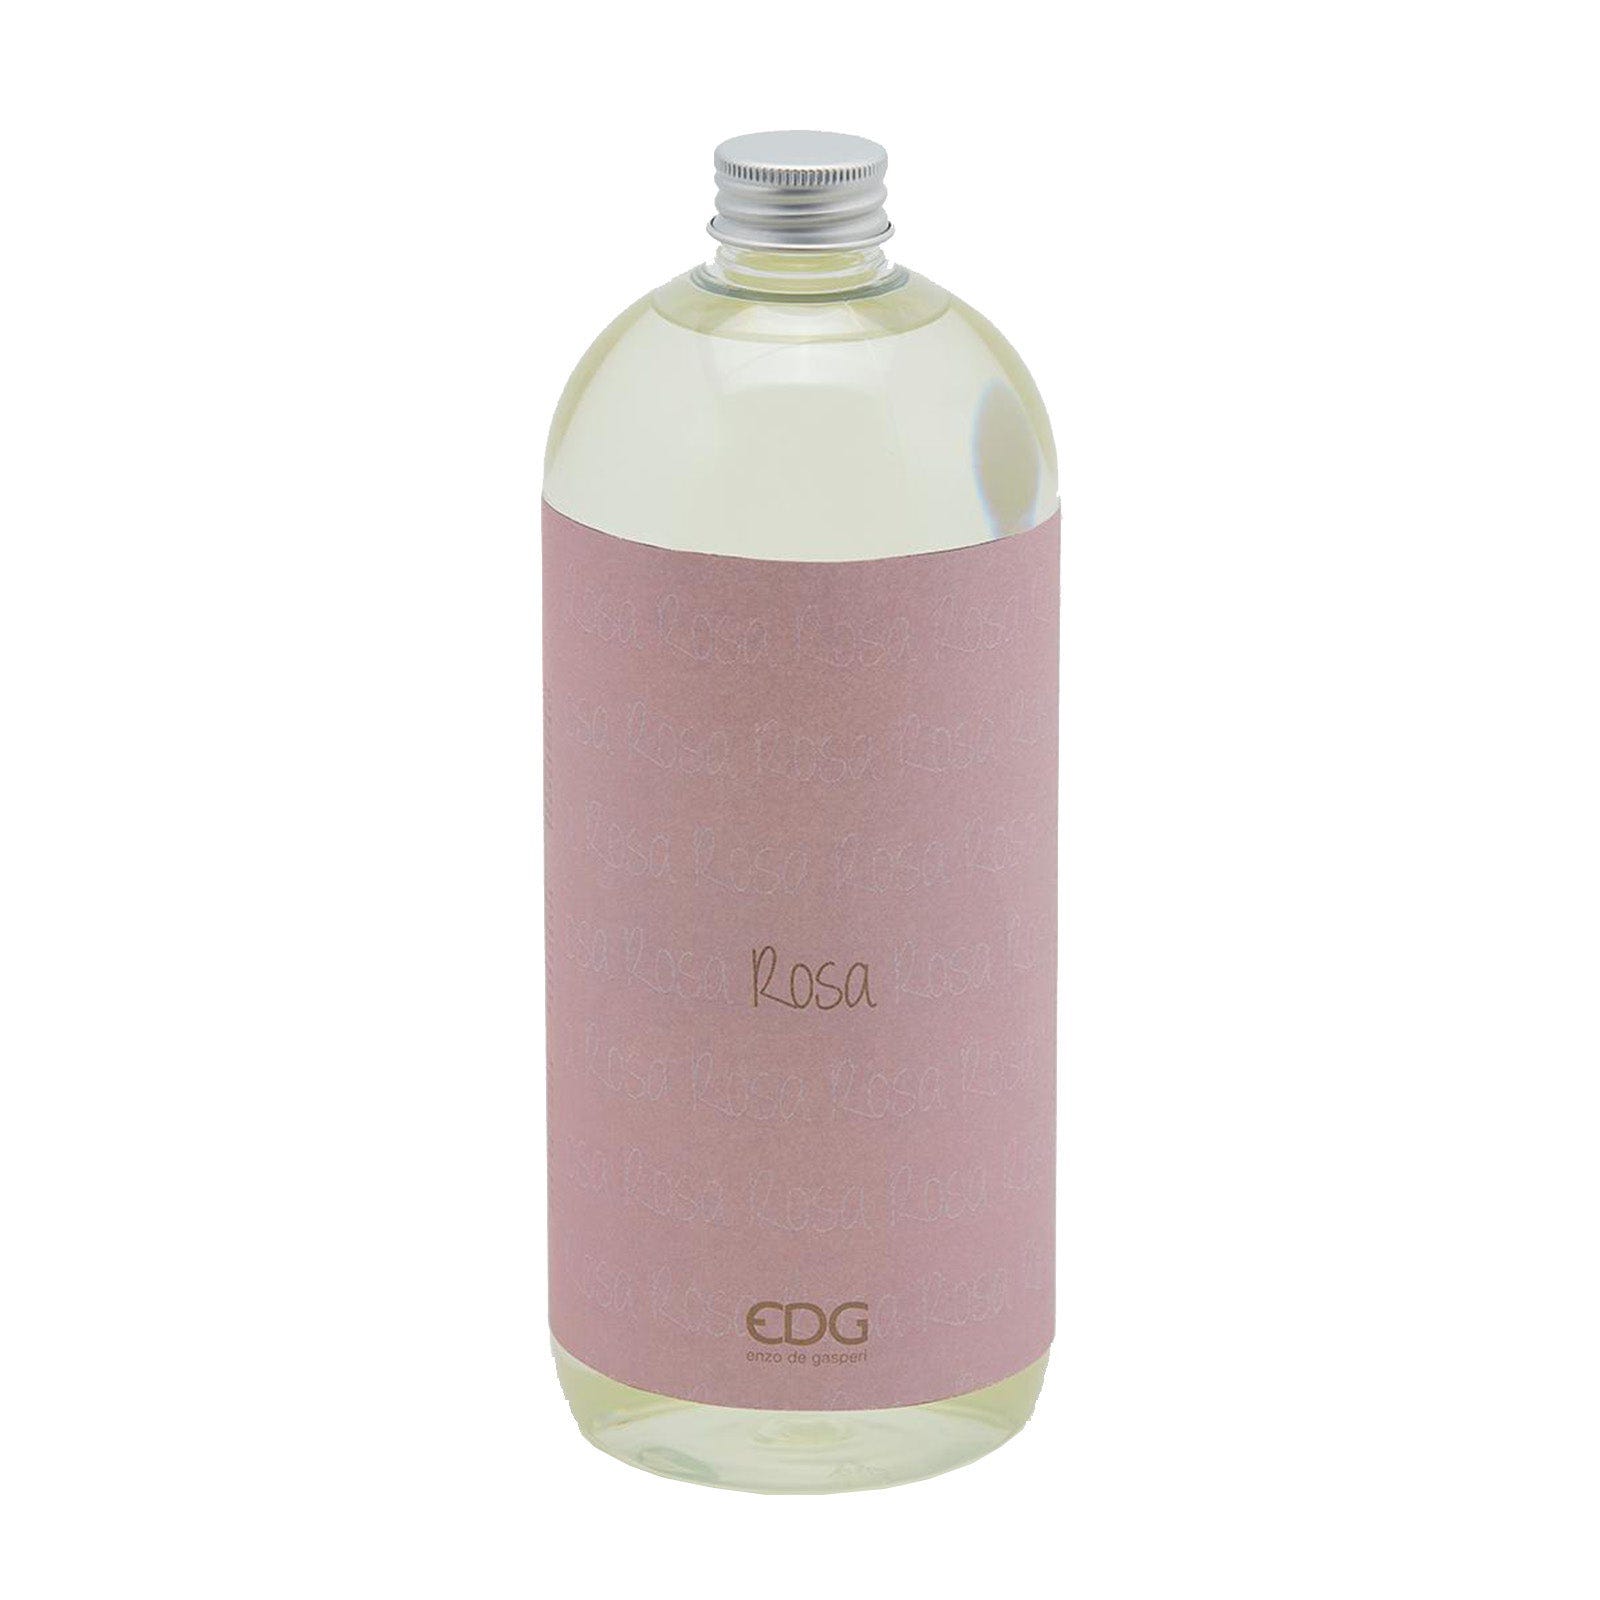 Ricarica per diffusore ambiente essenza naturale, profumo intenso EDG /  Rosa / 1 lt